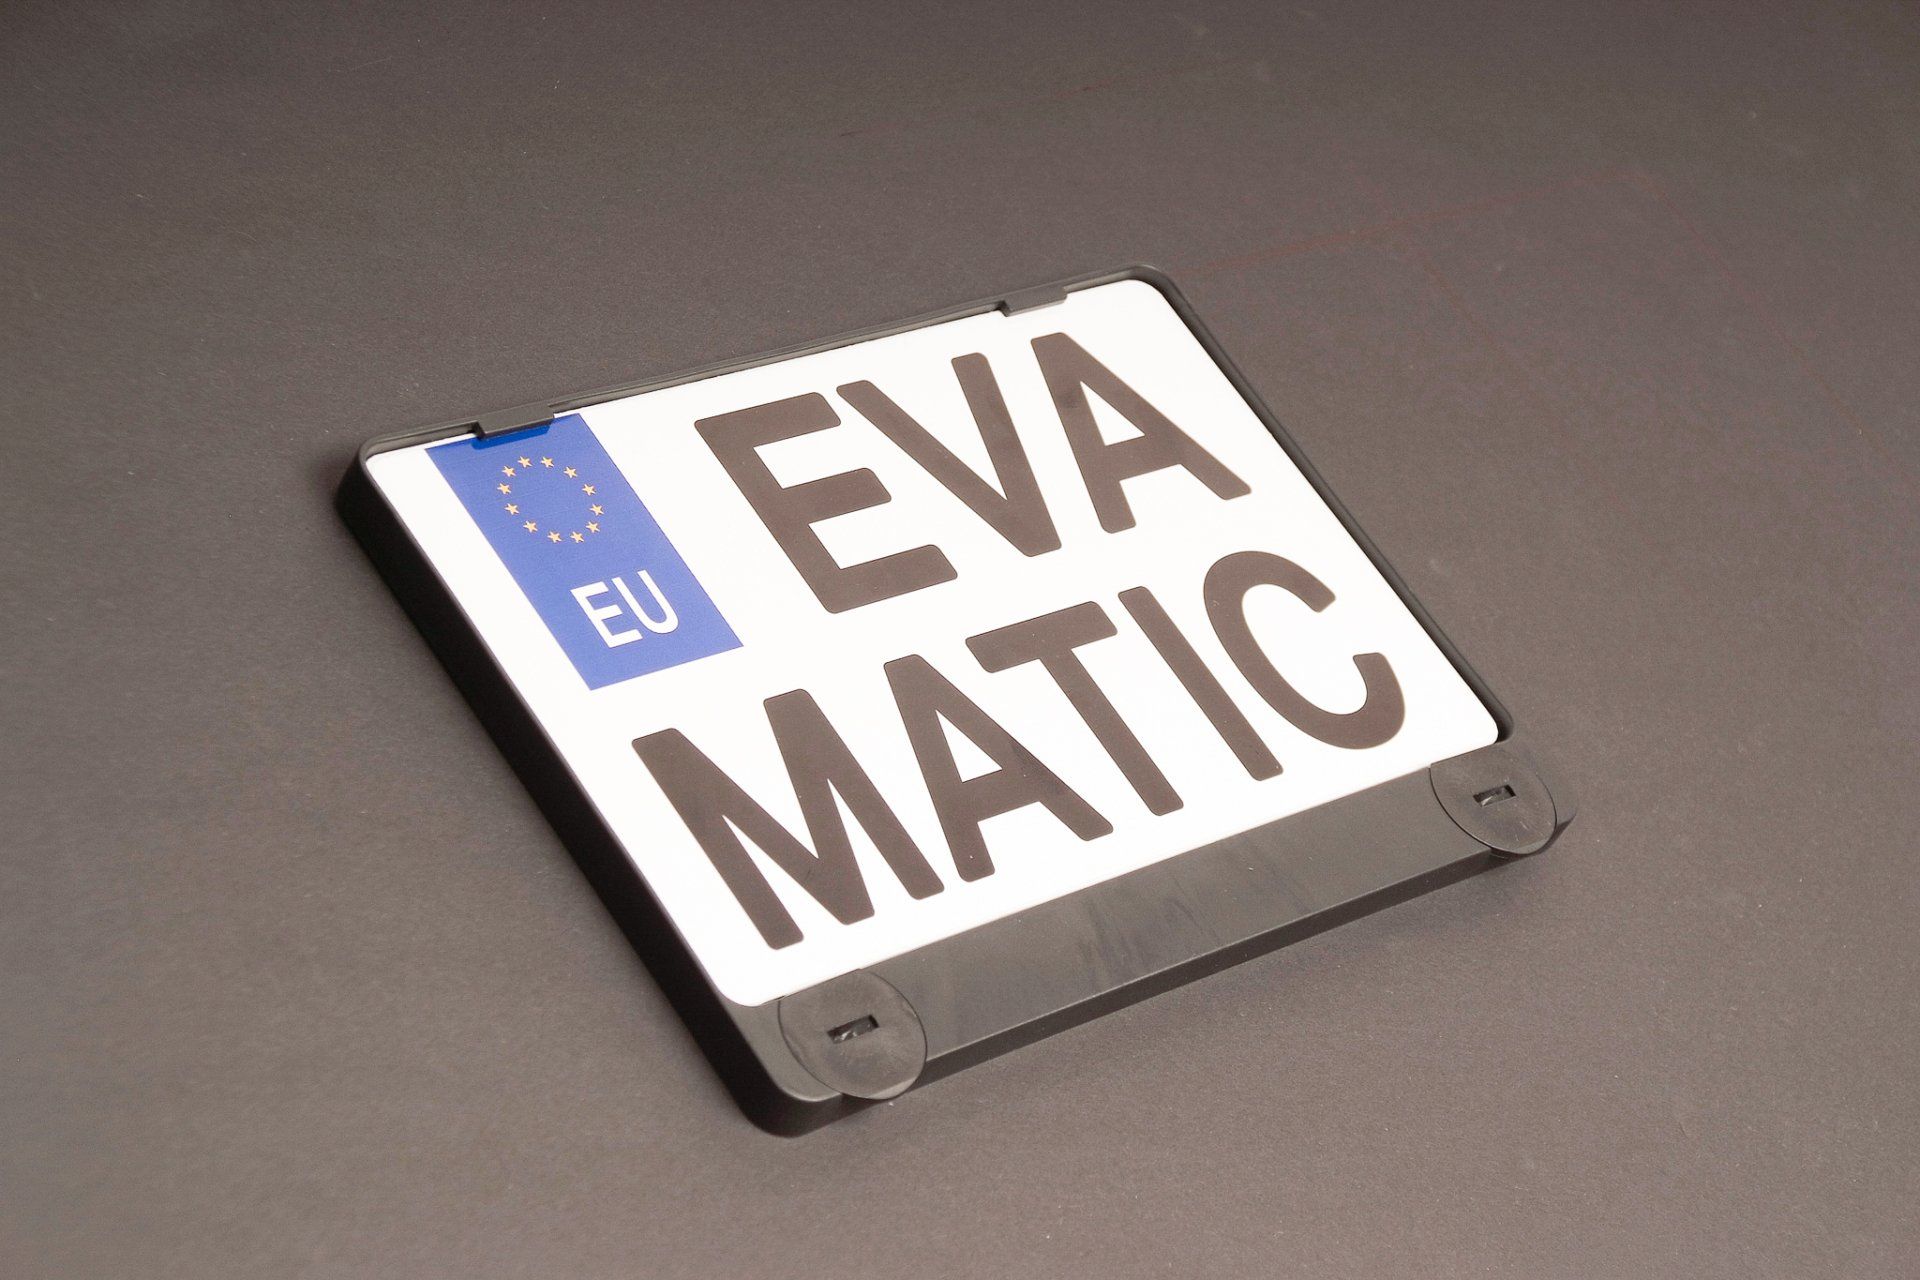 Ein Nummernschild mit der Aufschrift „eva matic“.